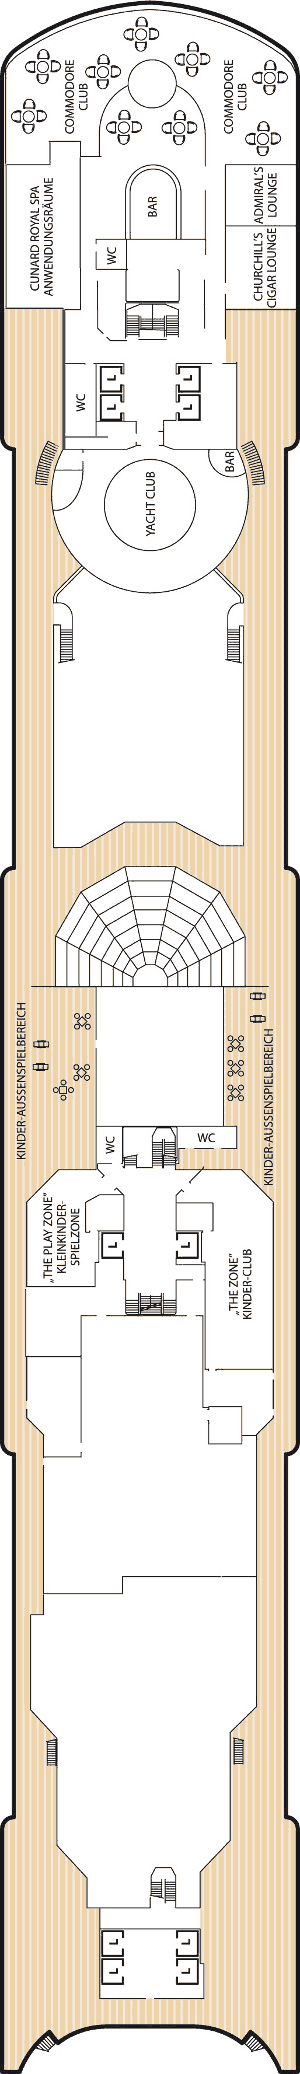 Queen Elizabeth - Decksplan Deck 10